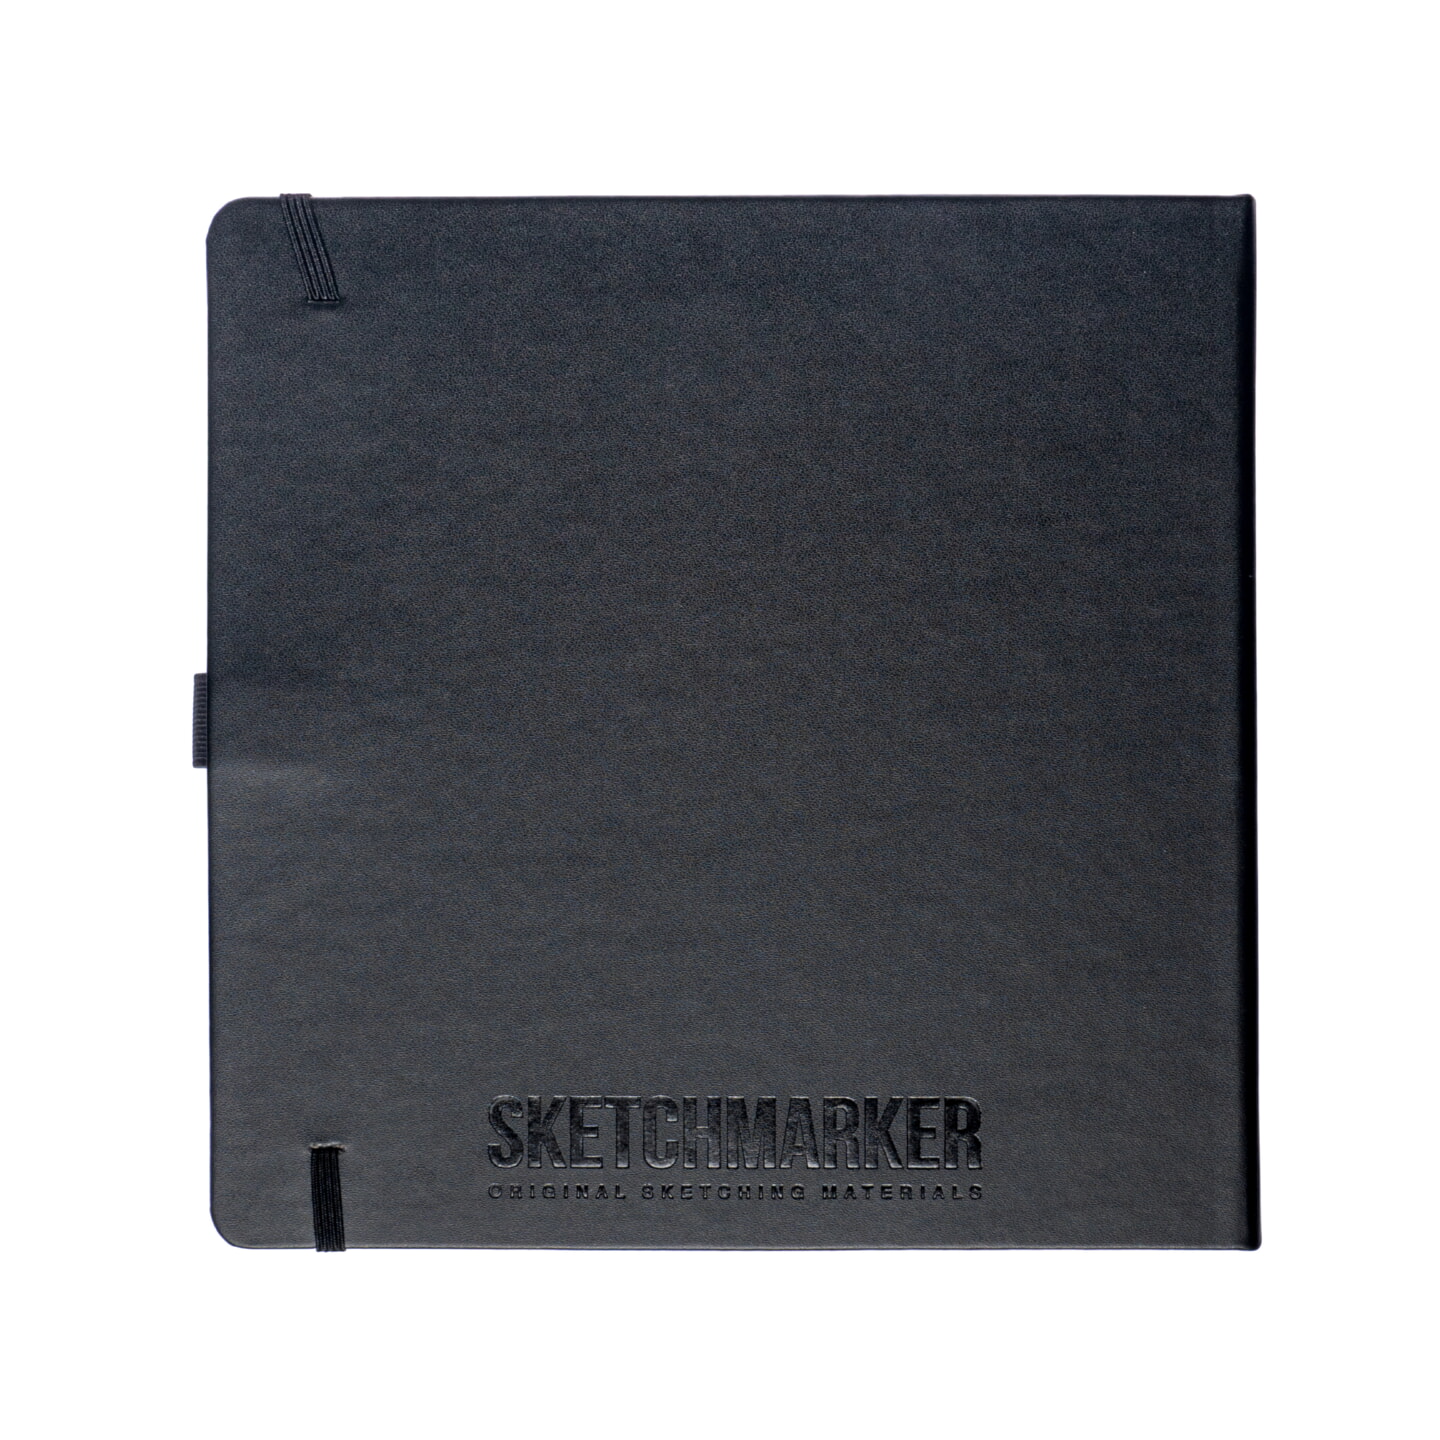 Блокнот для зарисовок Sketchmarker 140г/кв.м 20*20cм 80л твердая обложка Черный